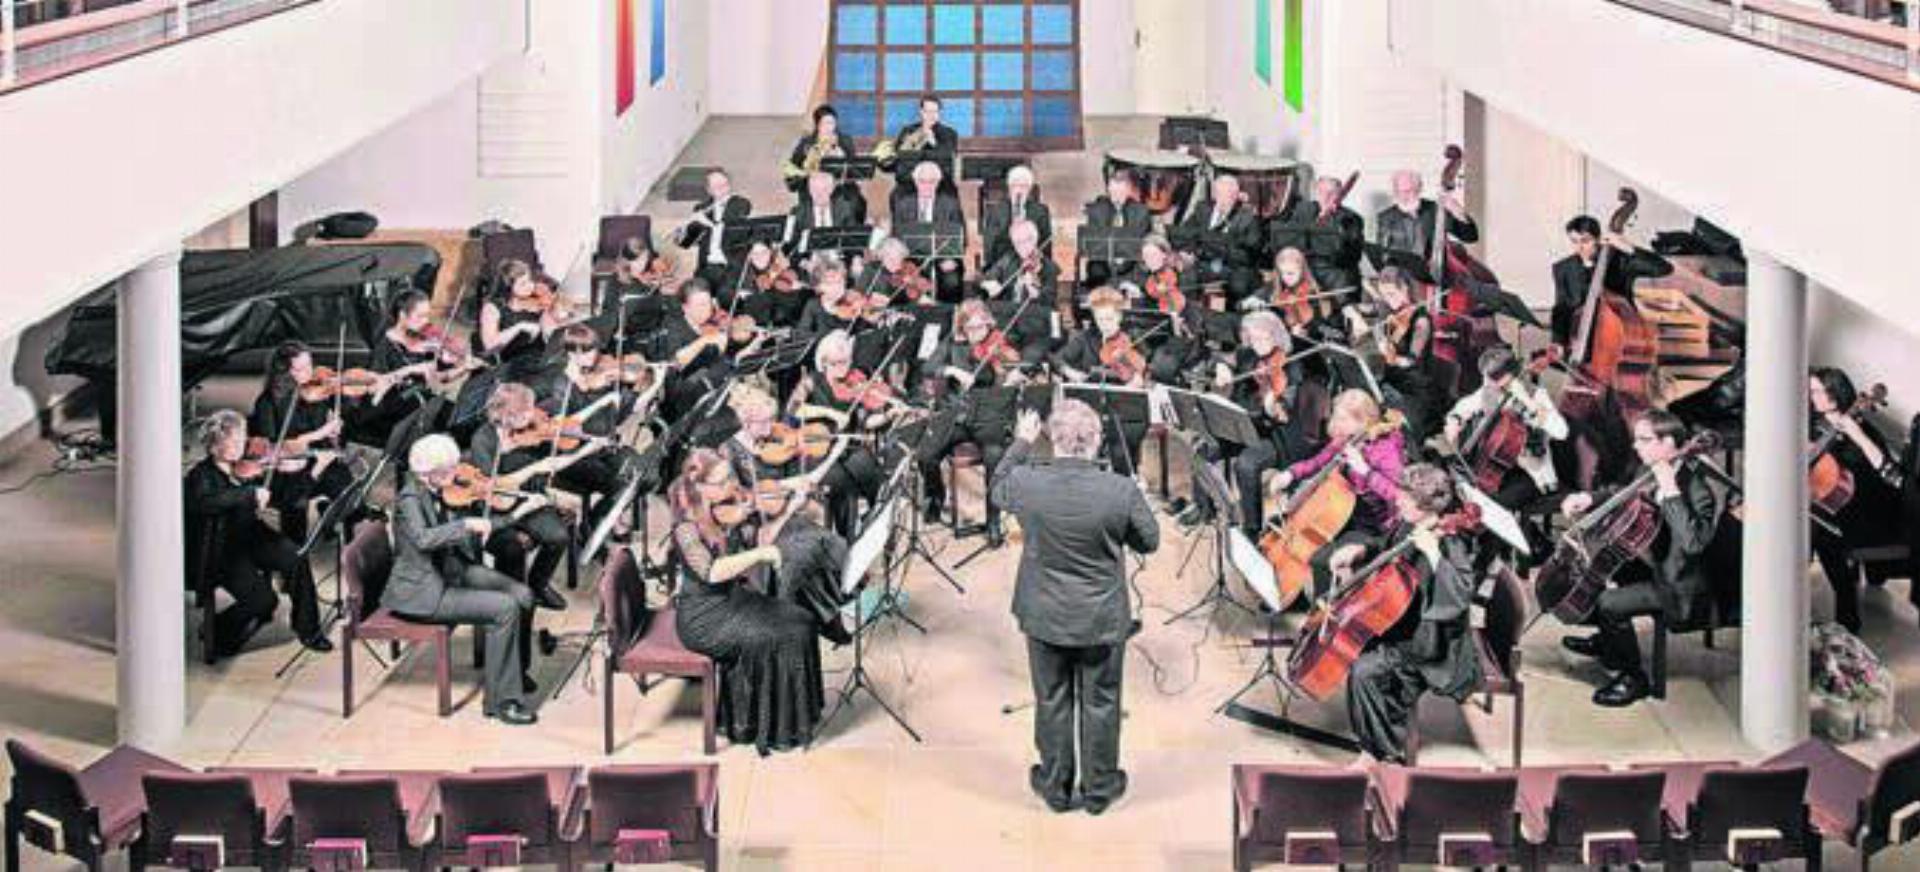 Für zwei Auftritte verlässt der Orchesterverein die Konzerthalle und spielt unter freiem Himmel. Bild: zg